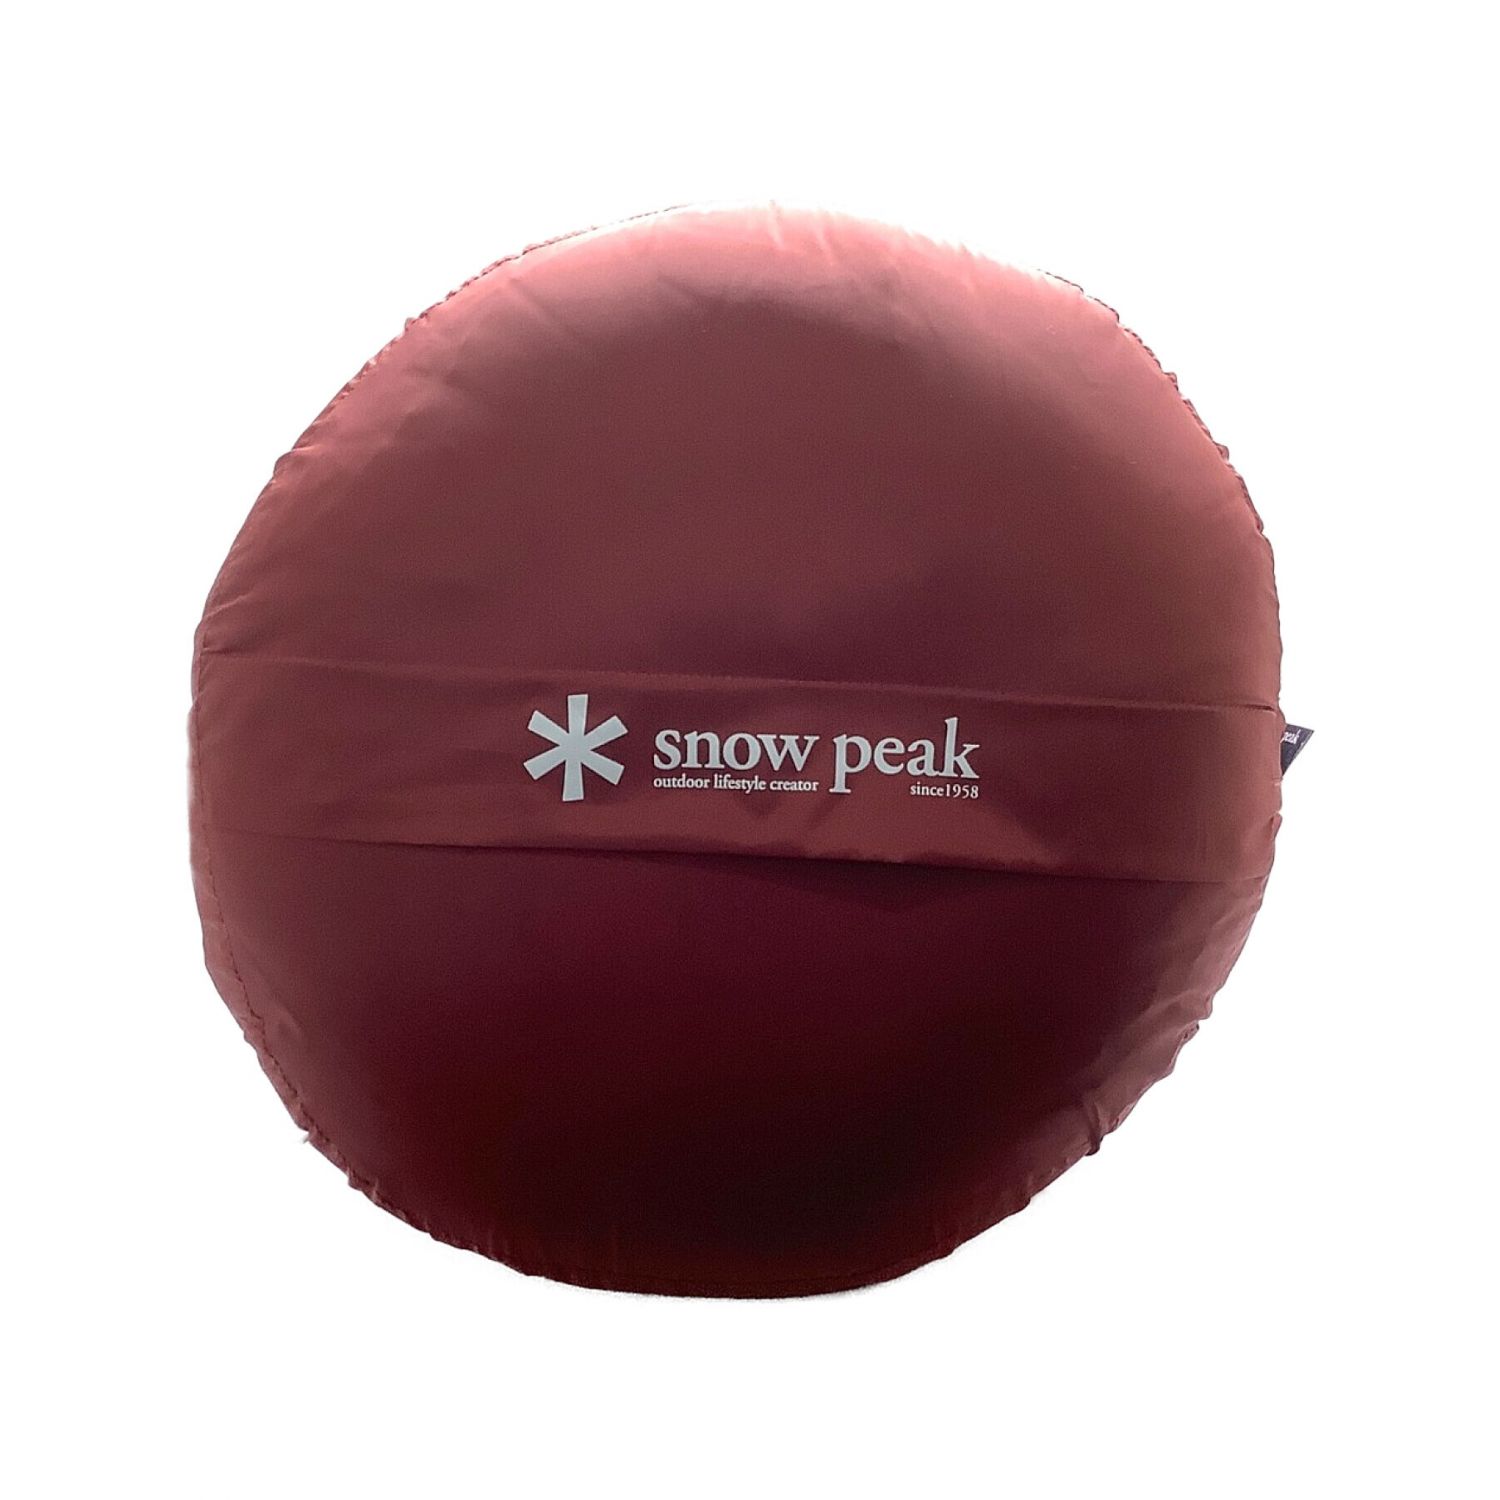 Snow peak (スノーピーク) セパレートオフトンワイド1400 BDD-104